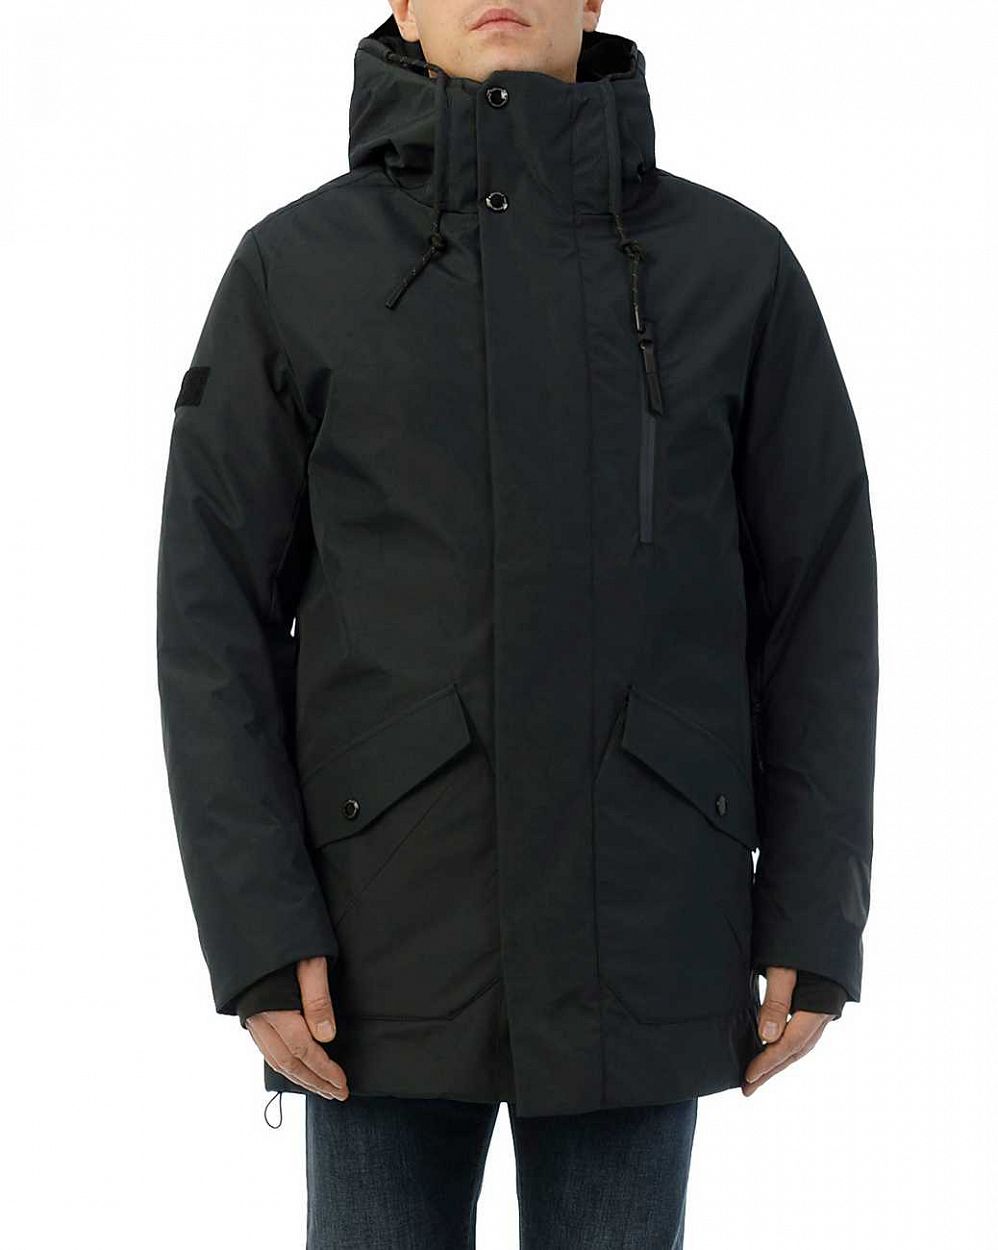 Куртка мужская зимняя водонепроницаемая на мембране Loading Reloaded 182 Blue Graphit отзывы